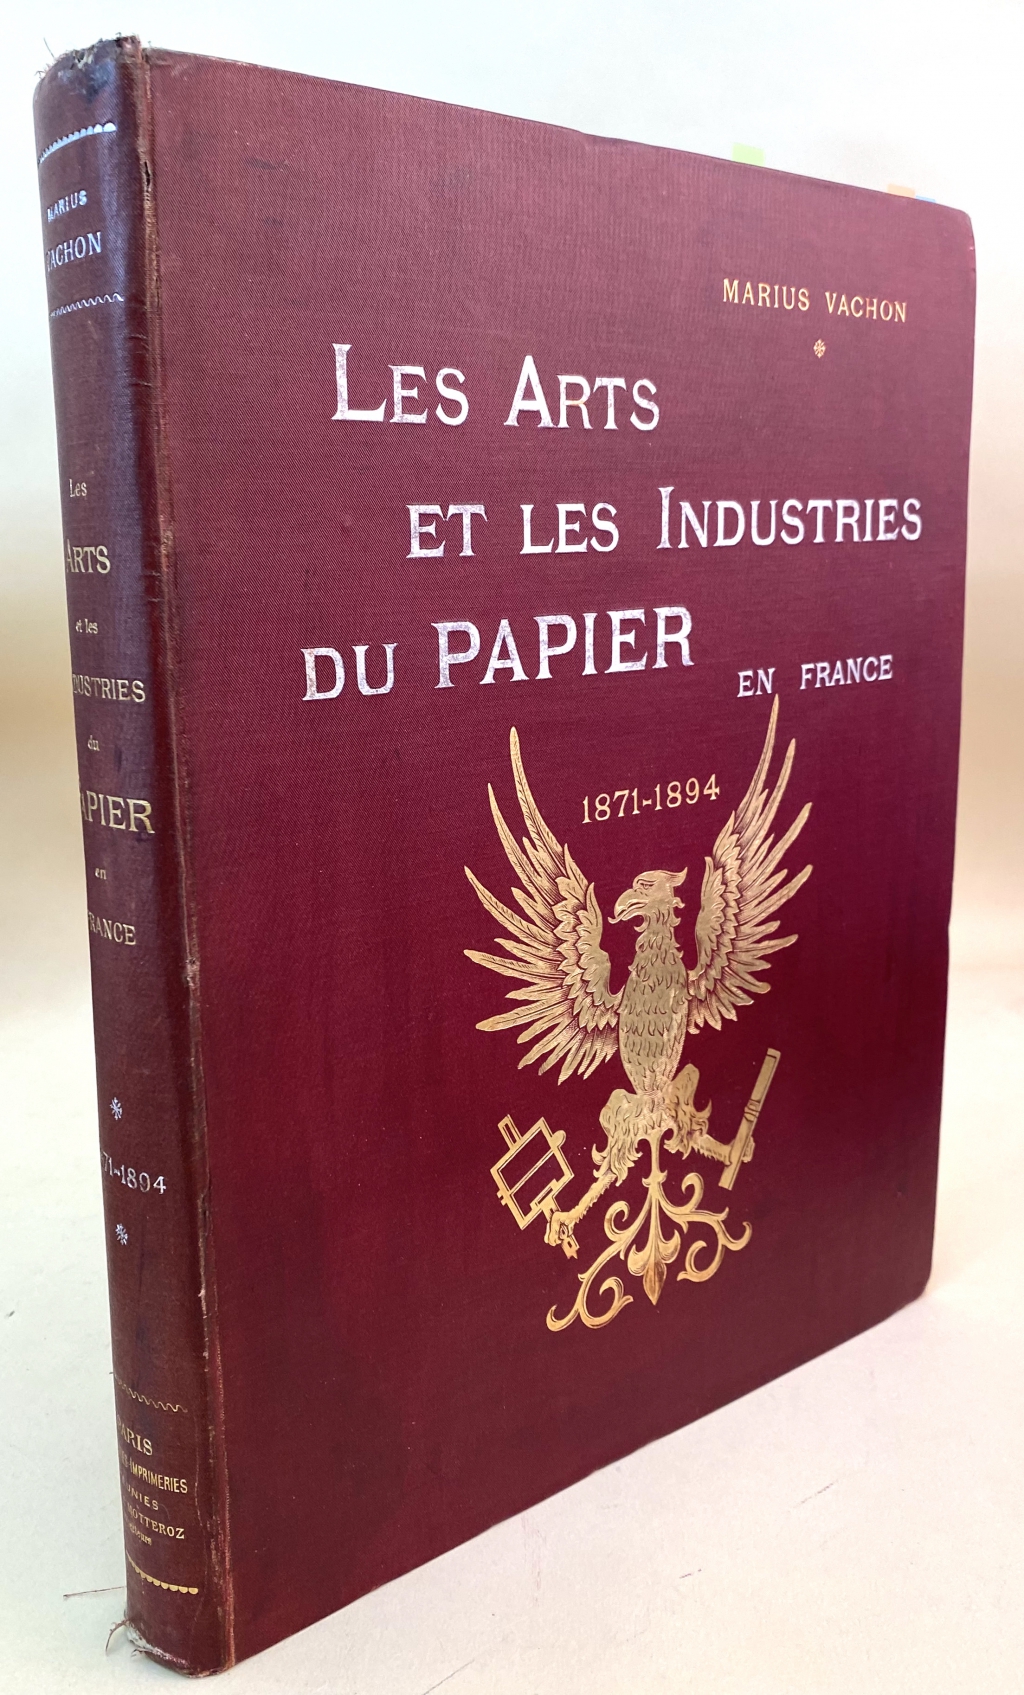 Cover of Vachon's Les arts et les industries du papier